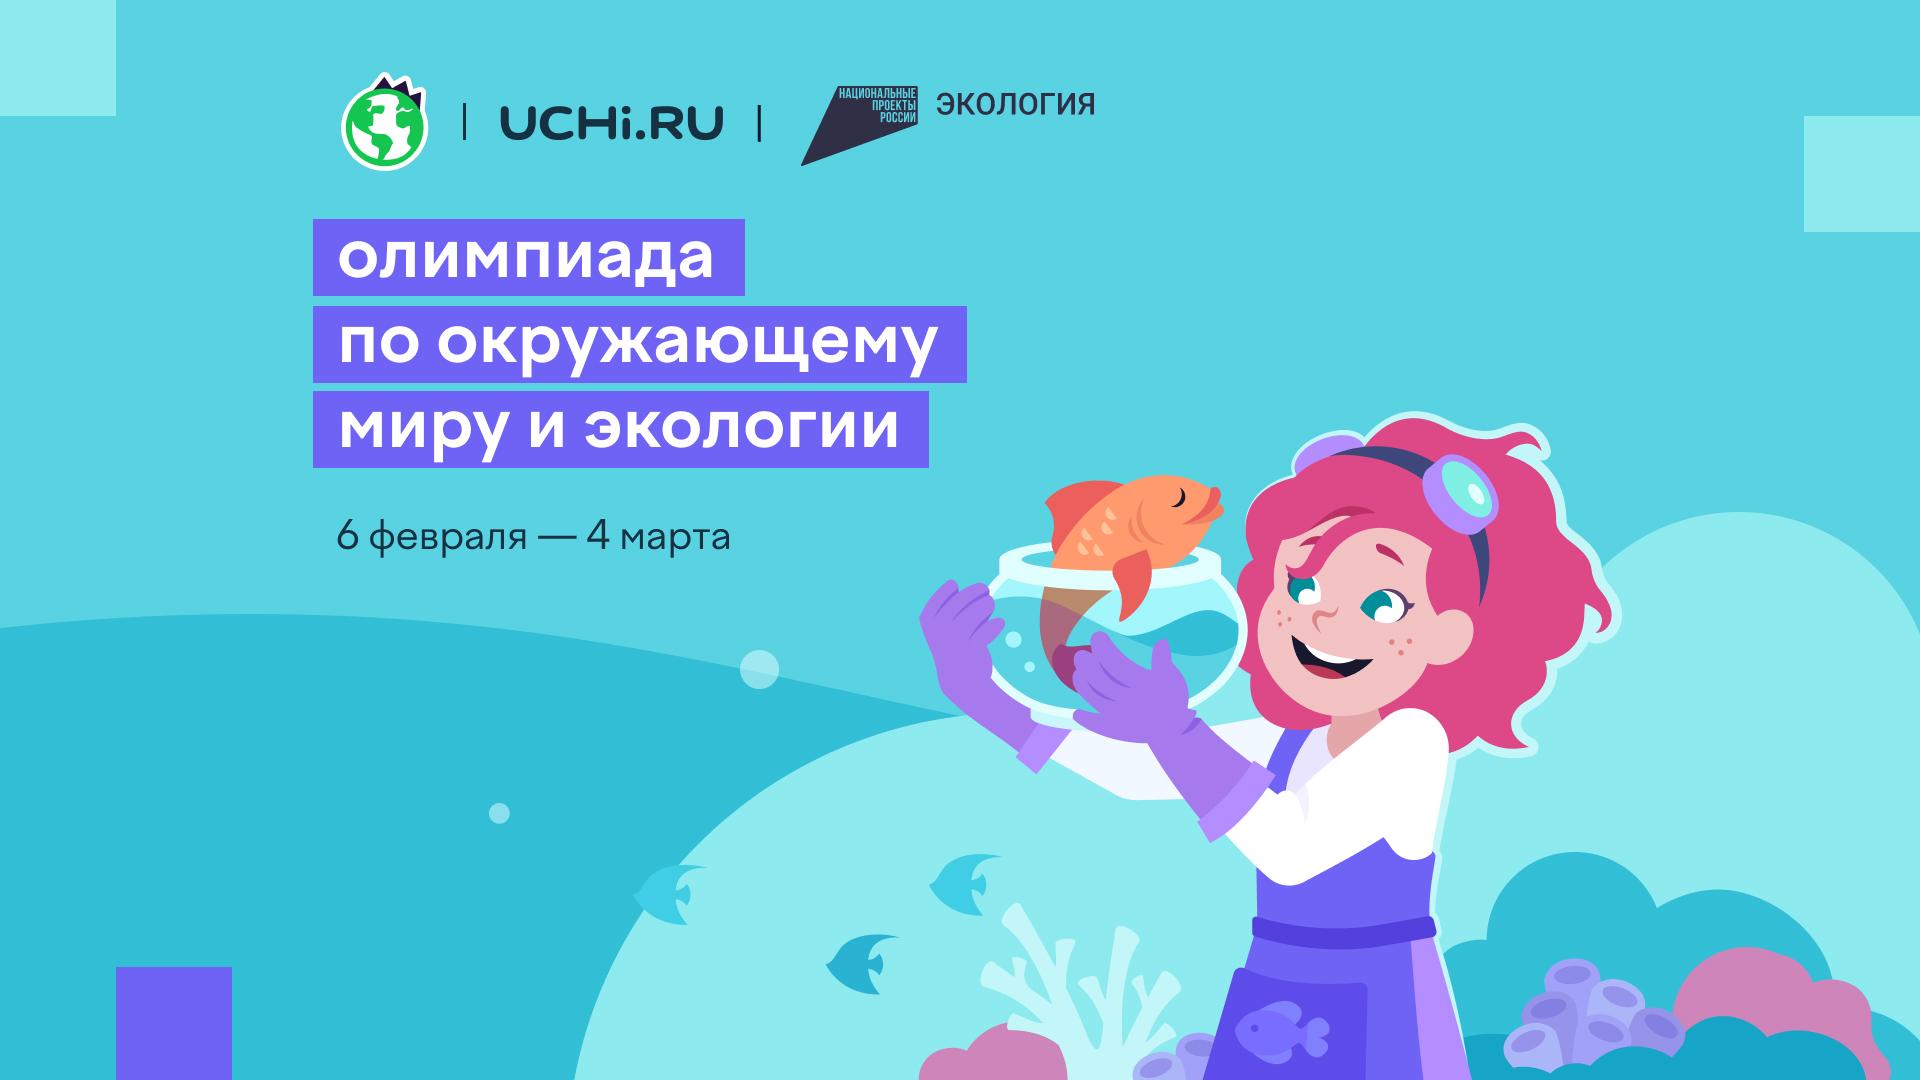 Всероссийская онлайн-олимпиада по окружающему миру и экологии для школьников 1-9 классов.